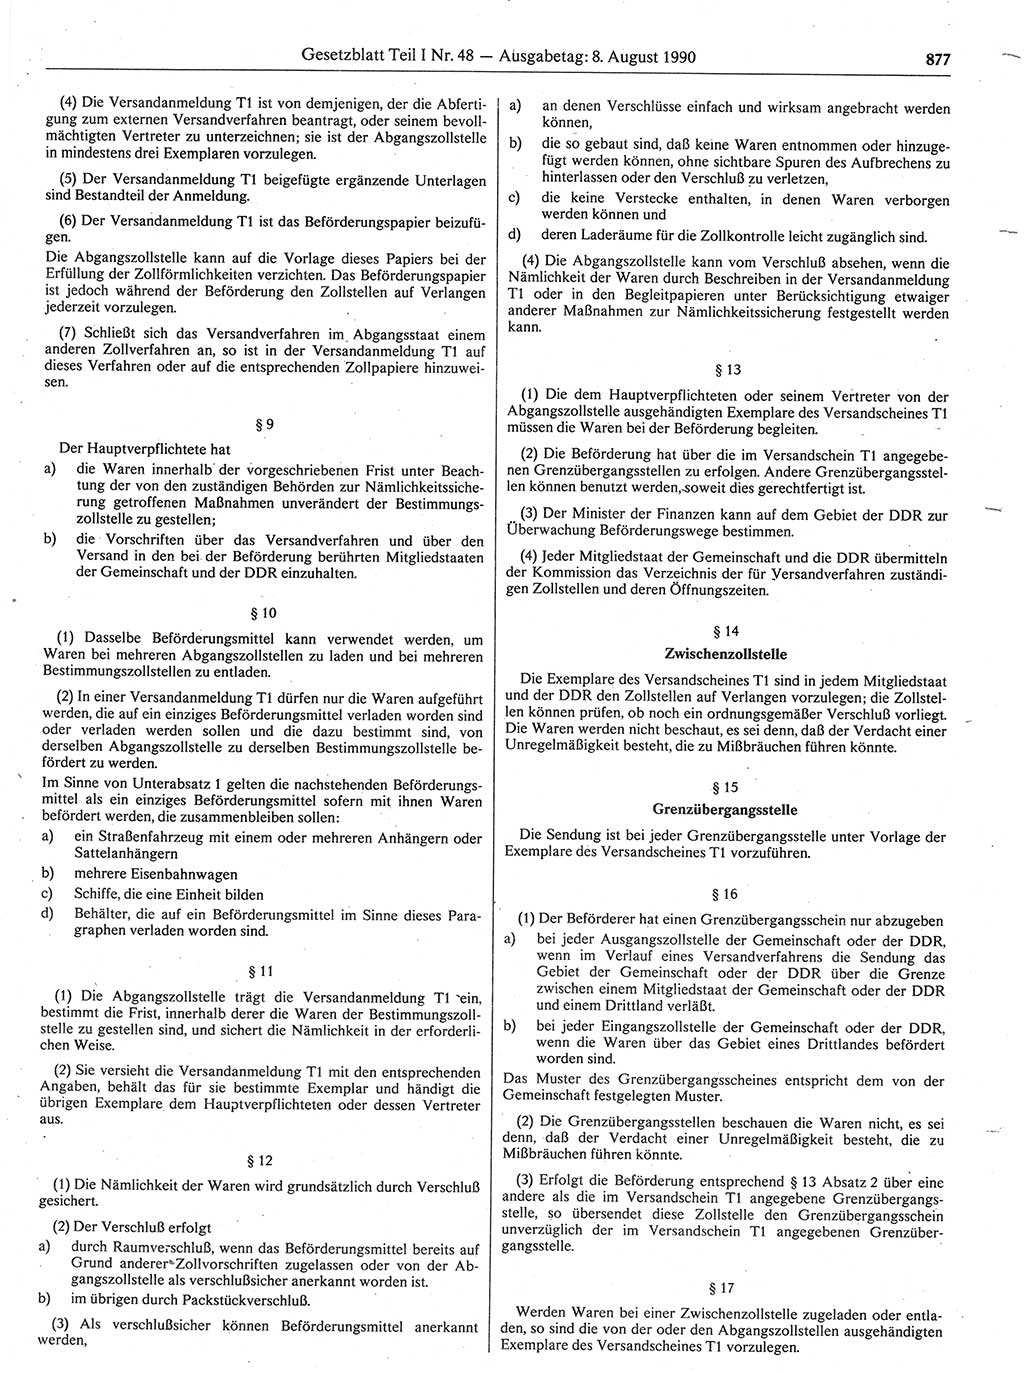 Gesetzblatt (GBl.) der Deutschen Demokratischen Republik (DDR) Teil Ⅰ 1990, Seite 877 (GBl. DDR Ⅰ 1990, S. 877)